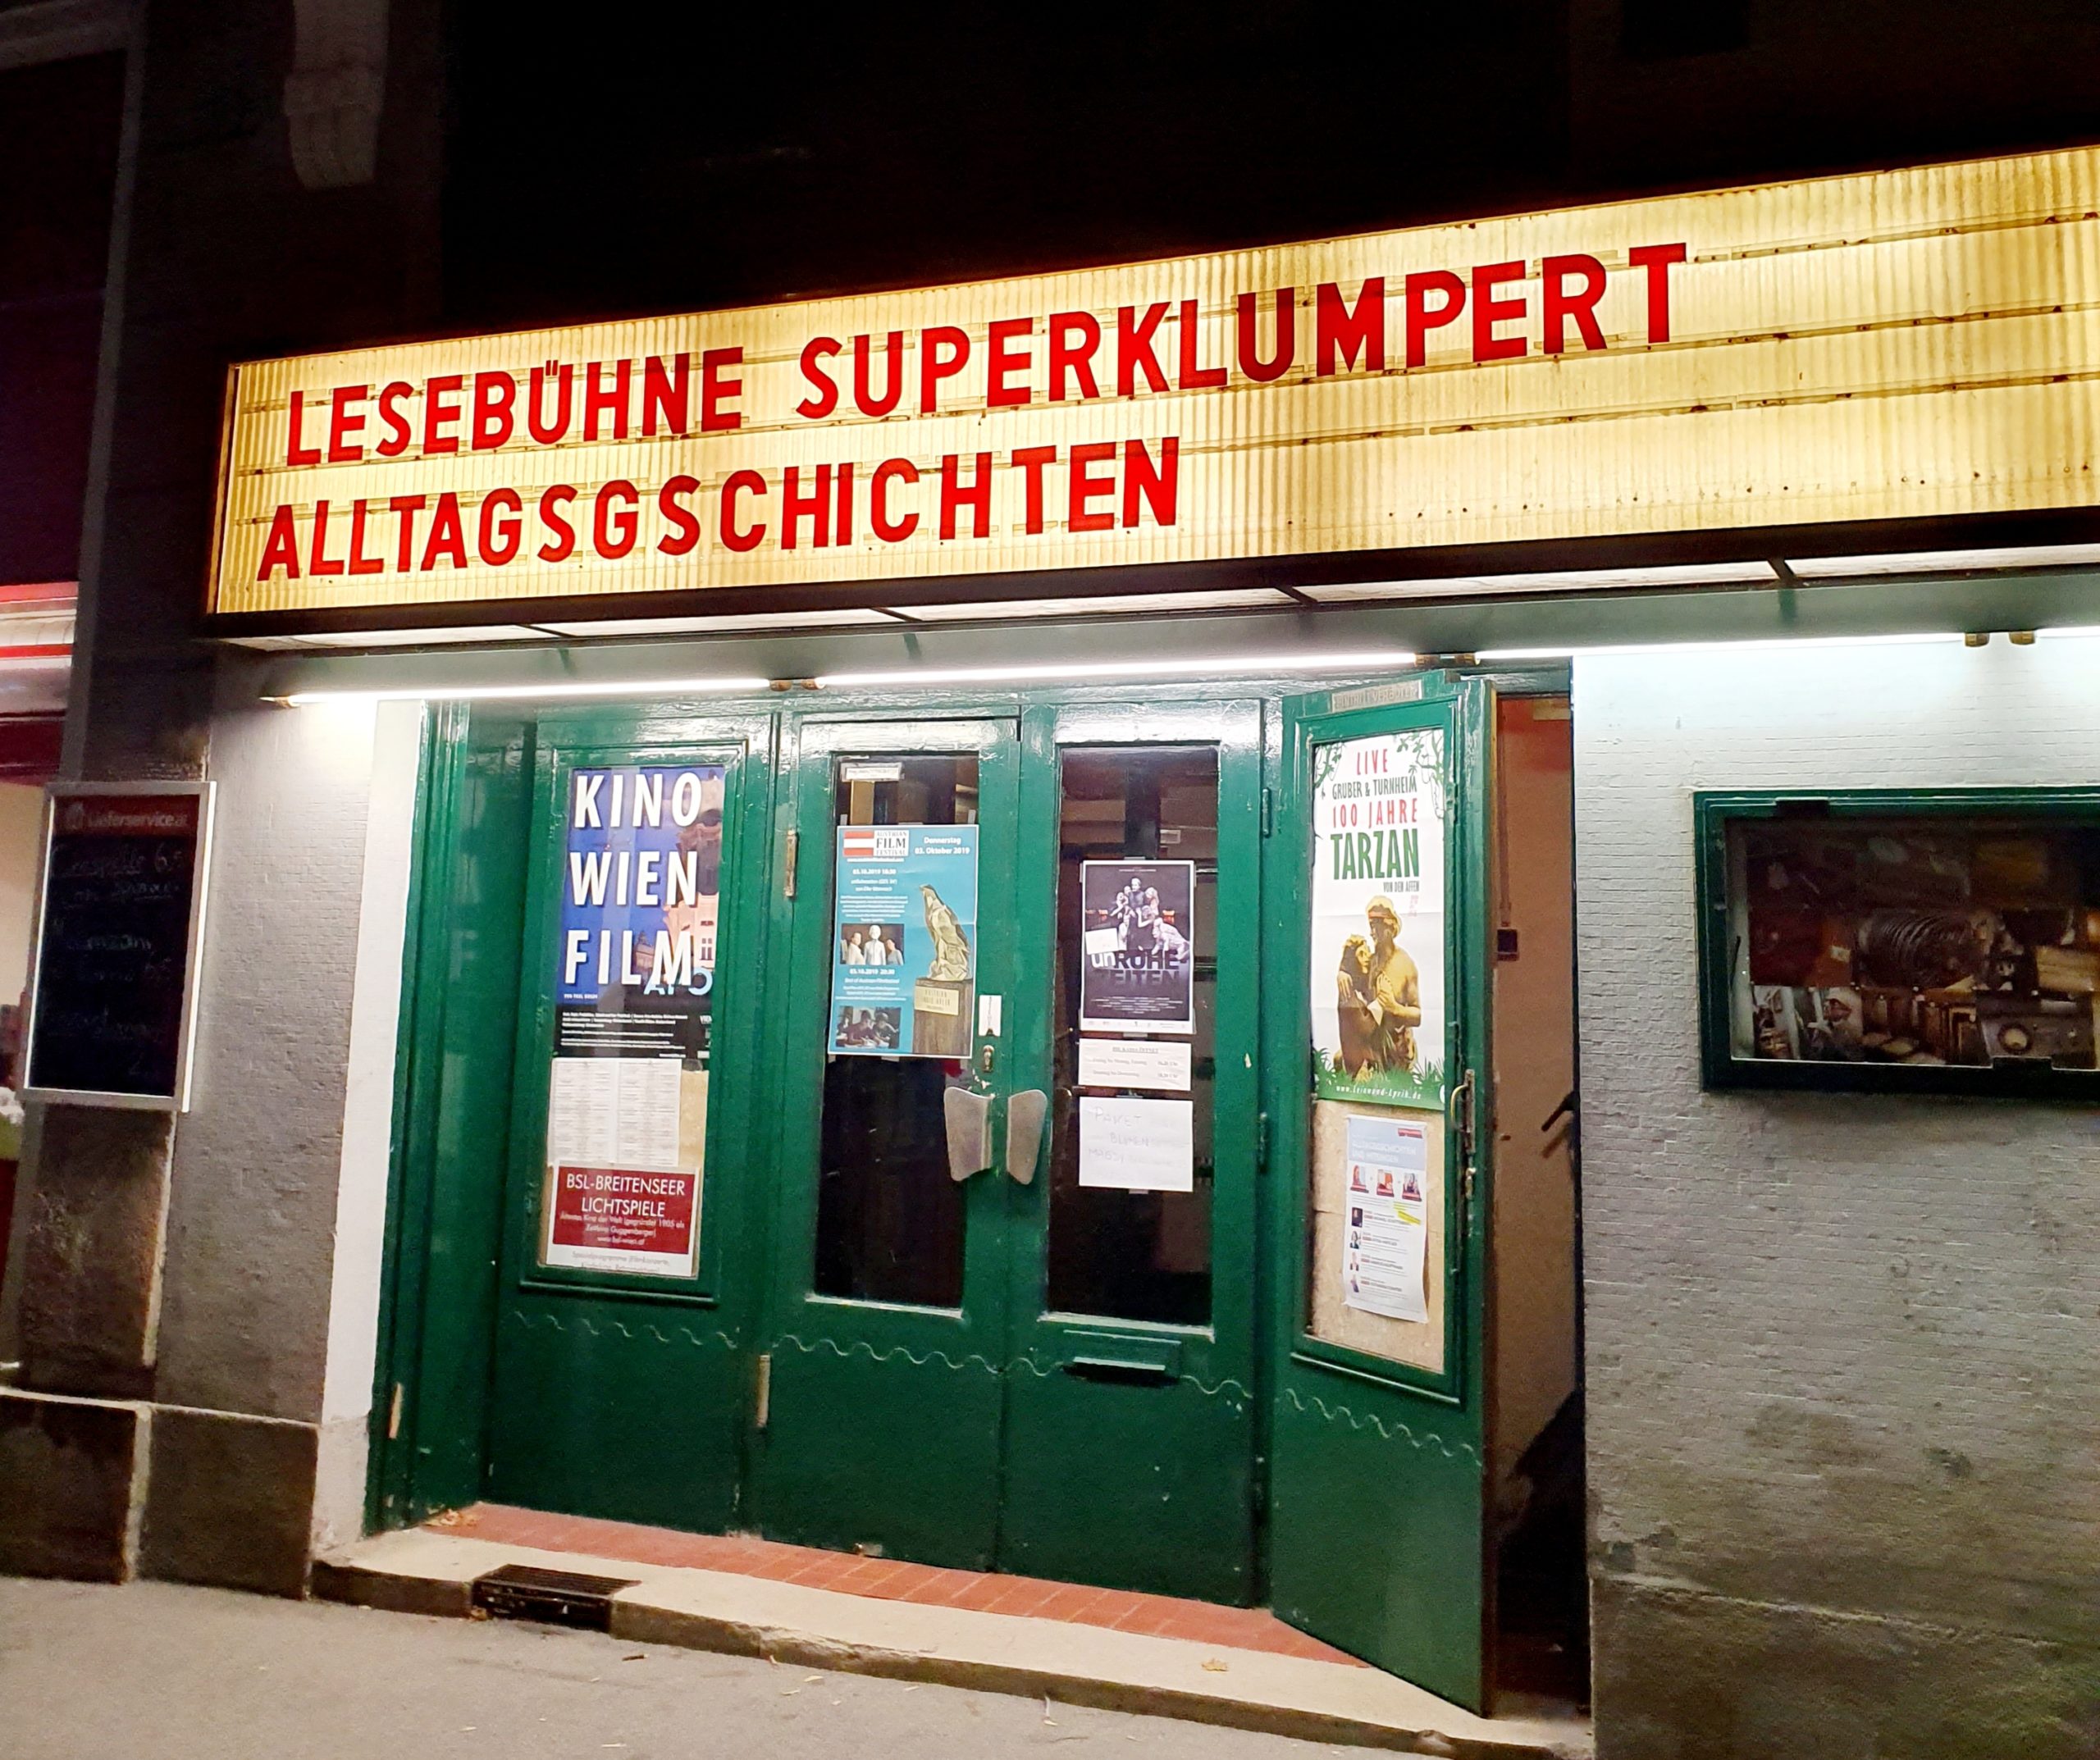 Lesebühne Superklumpert: Wiener Alltagsgeschichten